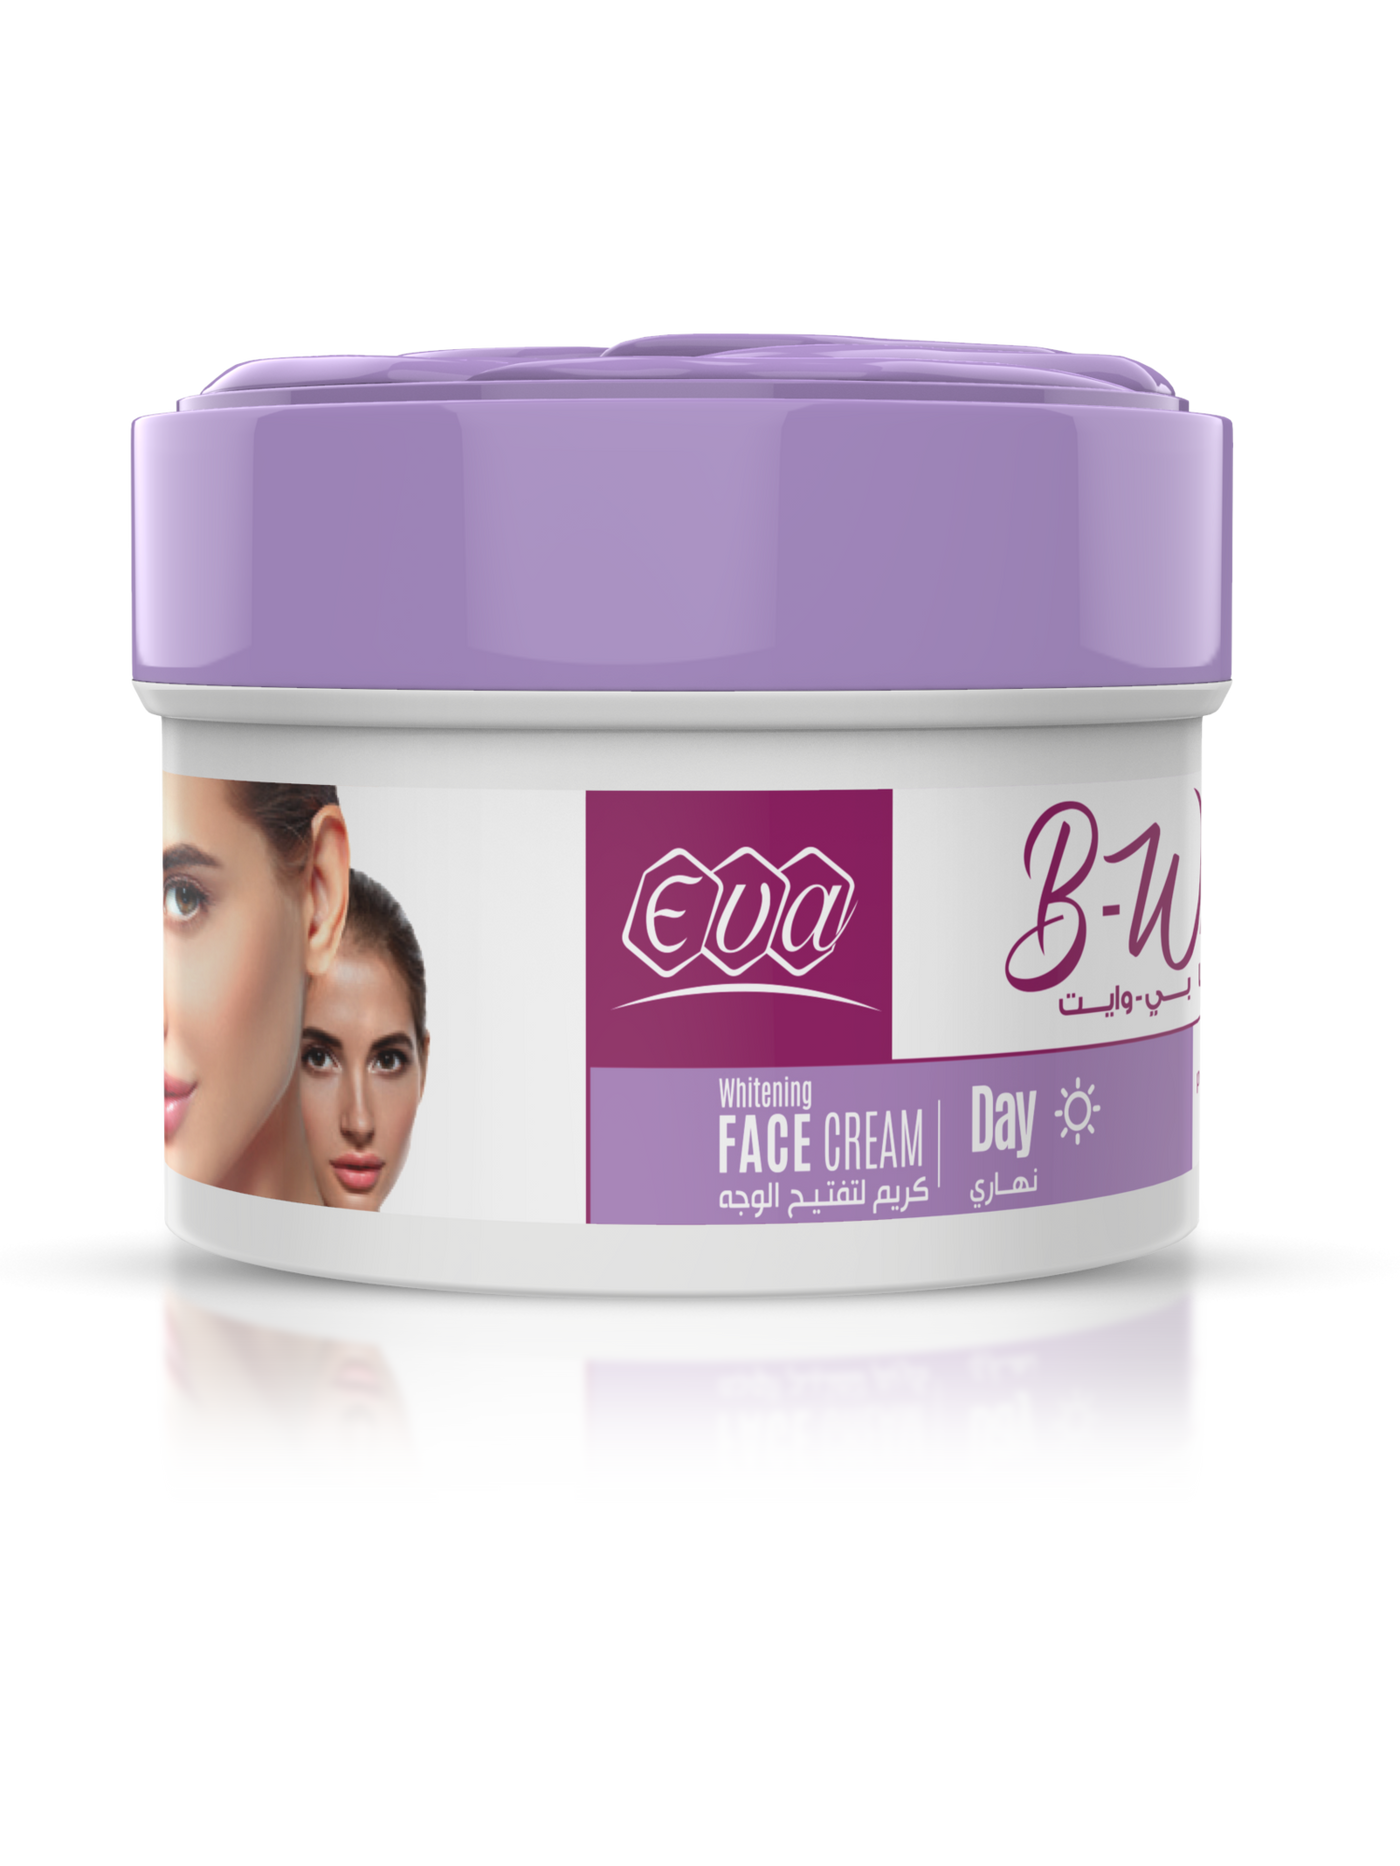 Eva B-White Day Whitening Cream 18 gm